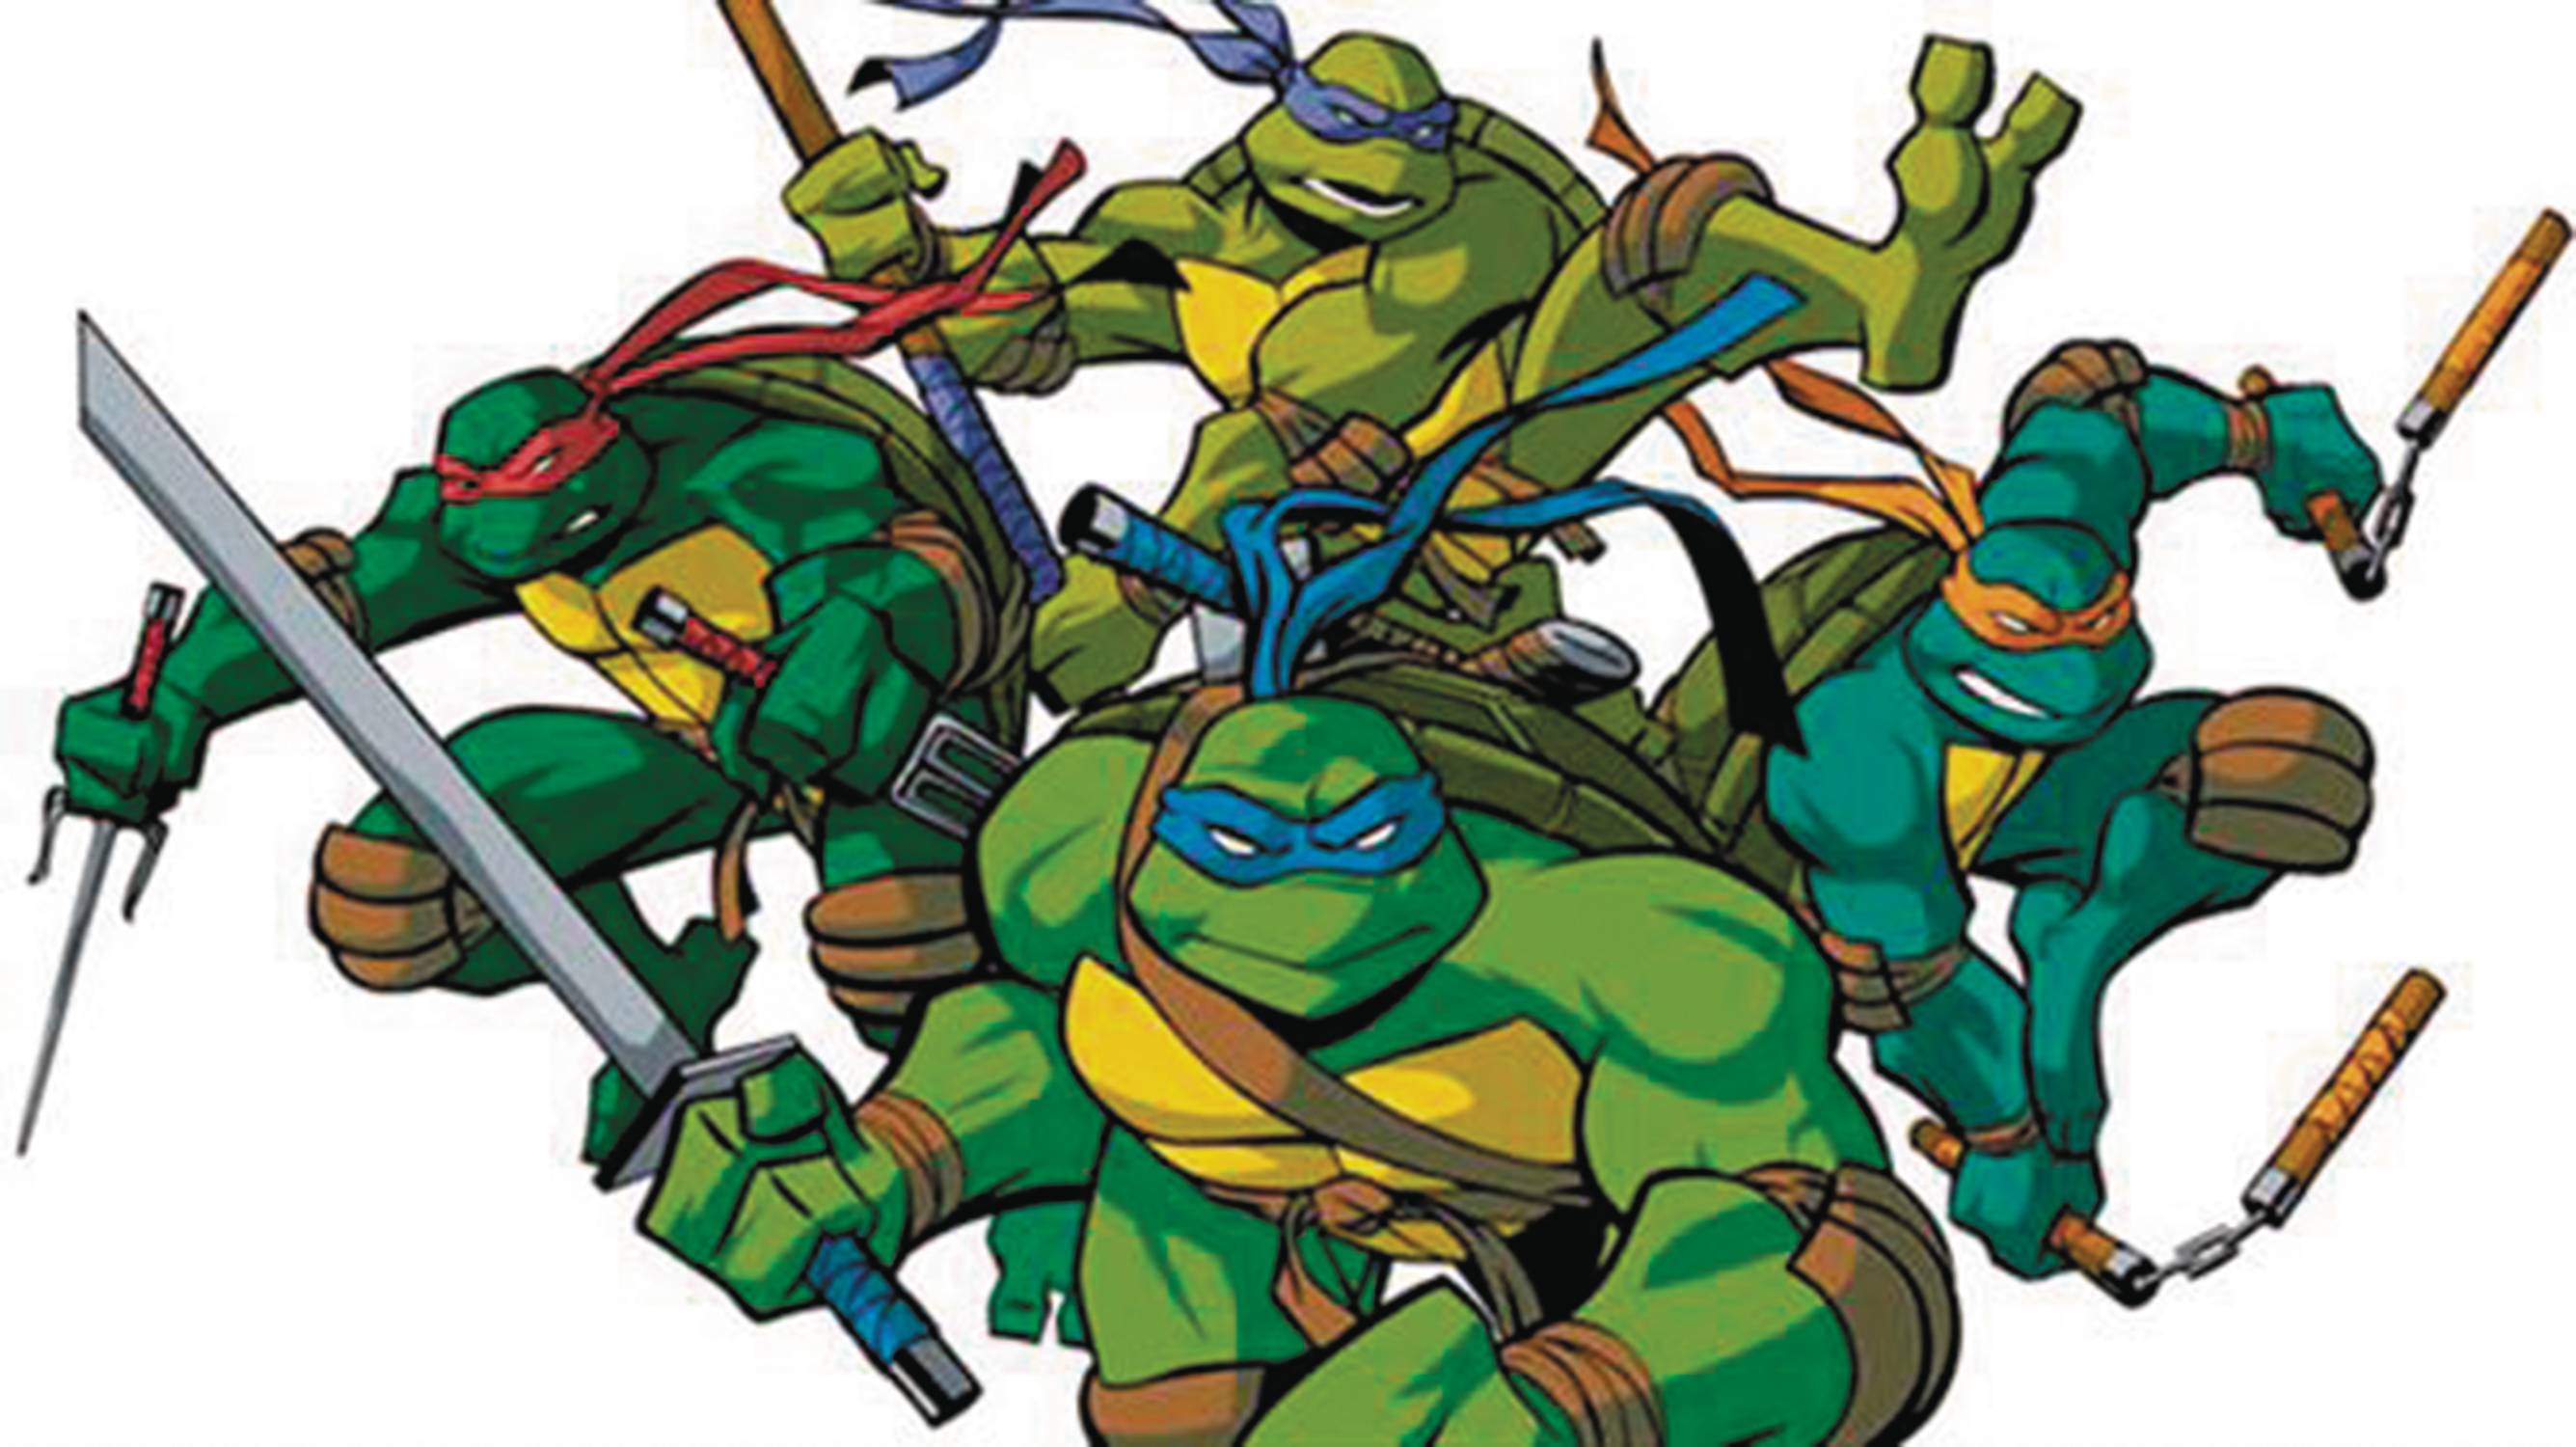 Adult Mutant Ninja Turtles